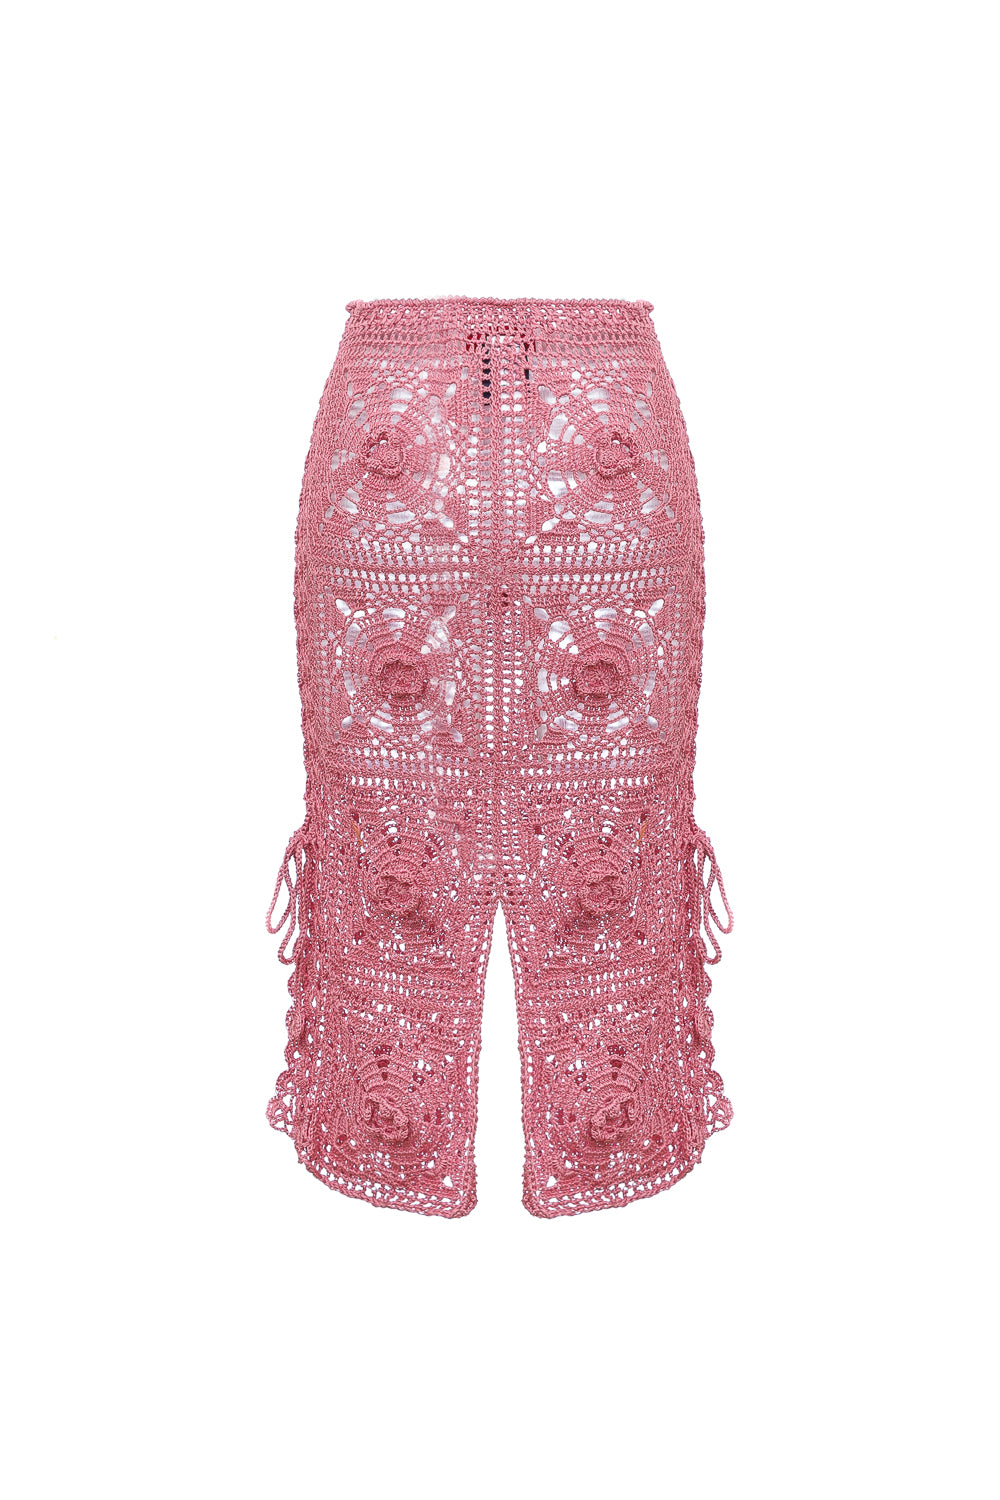 andreeva pink handmade crochet skirt